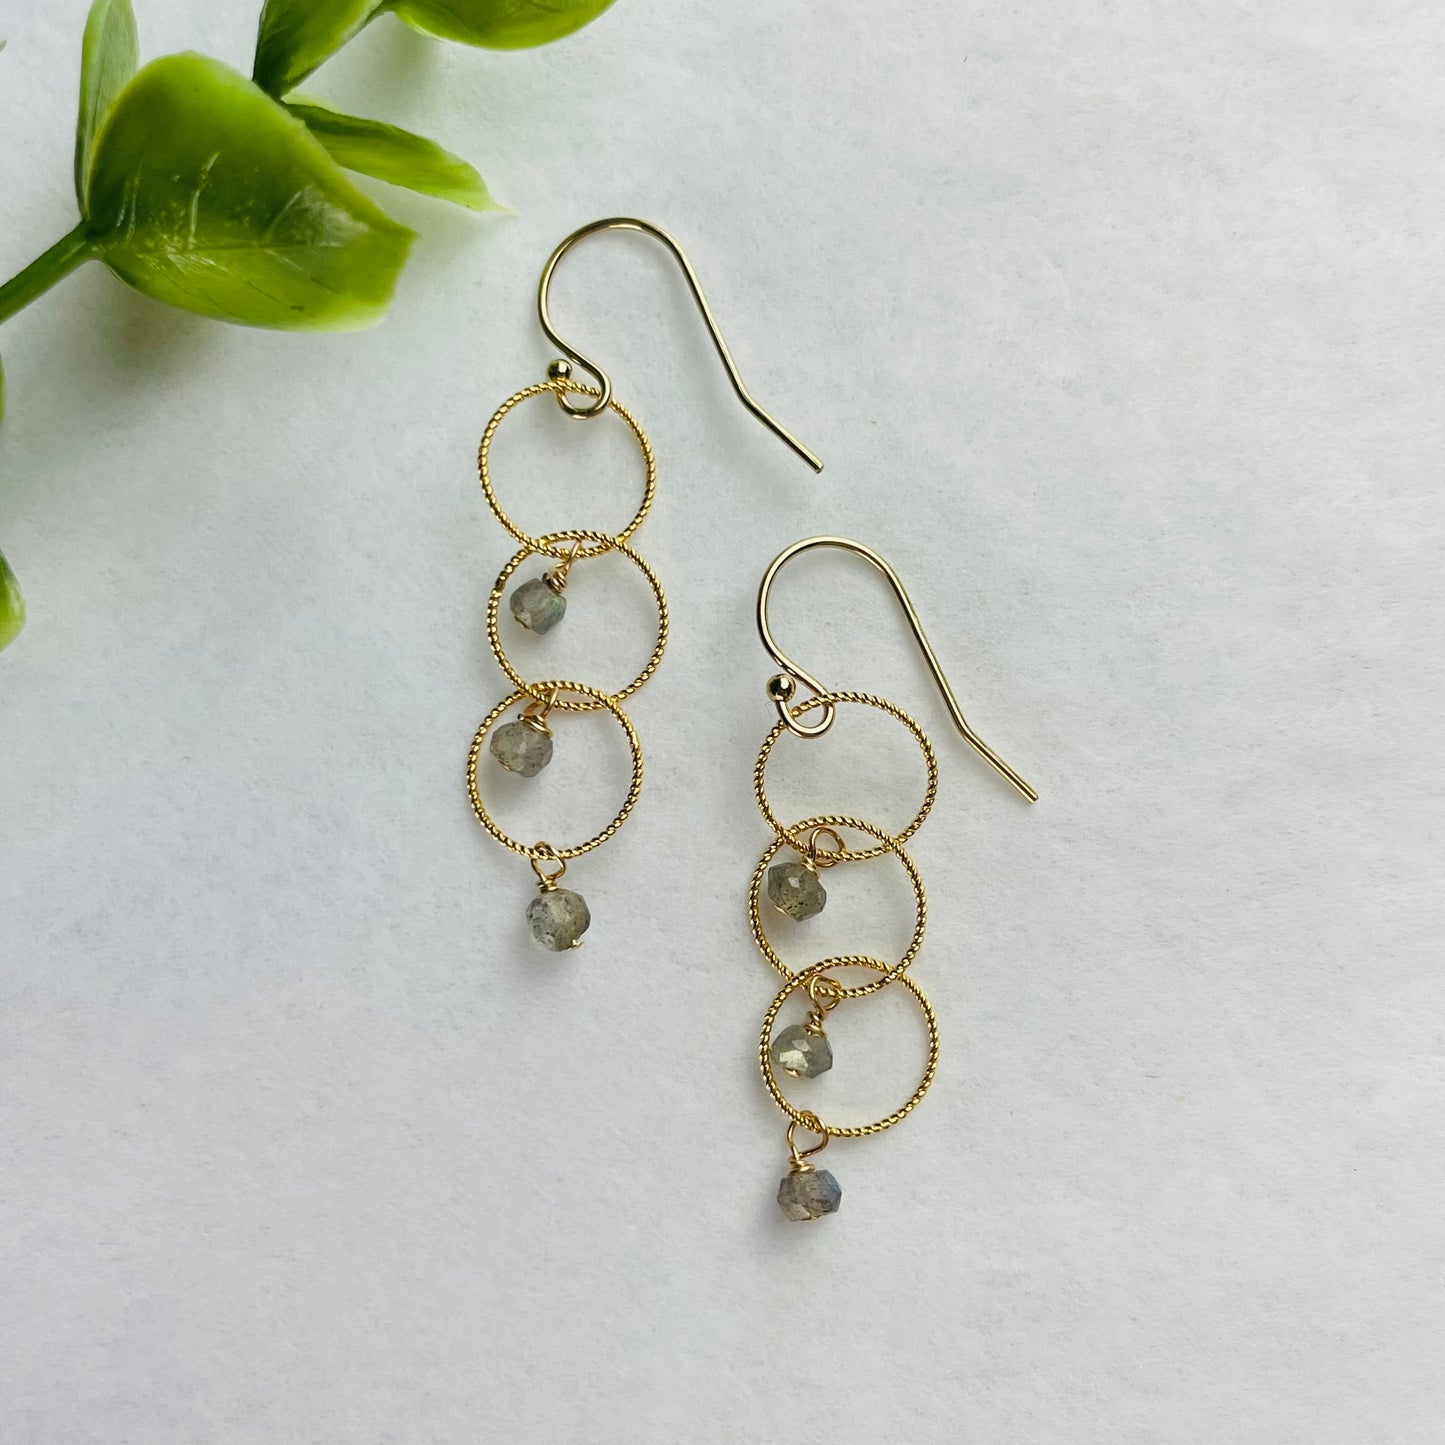 Treisi Jewelry 14k Gold Triple Twist Hoop Earrings - Multiple Stones